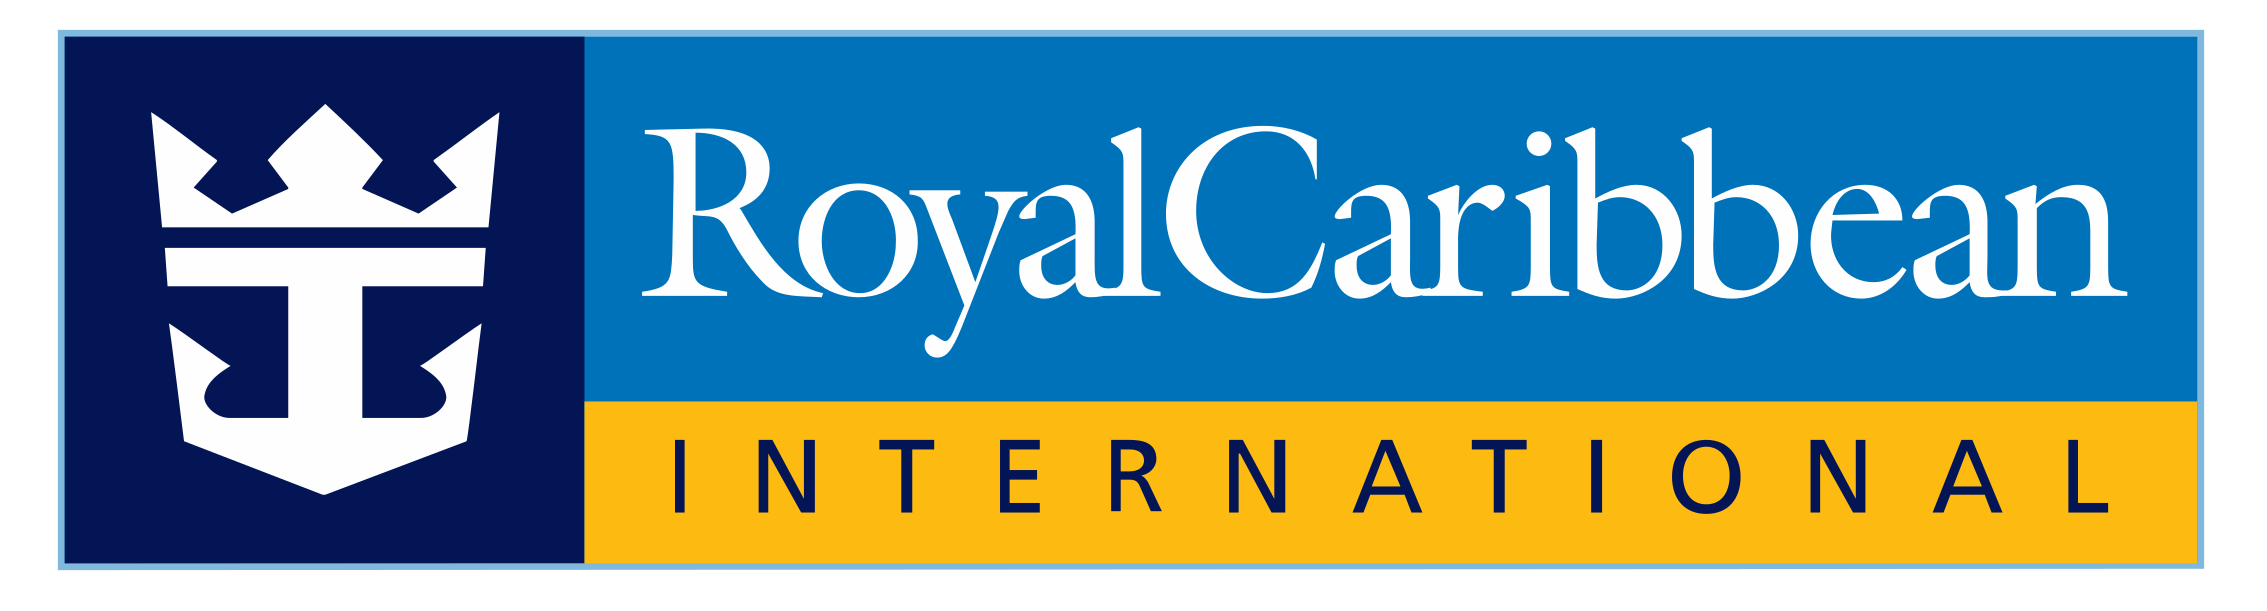 royal-caribbean-logo